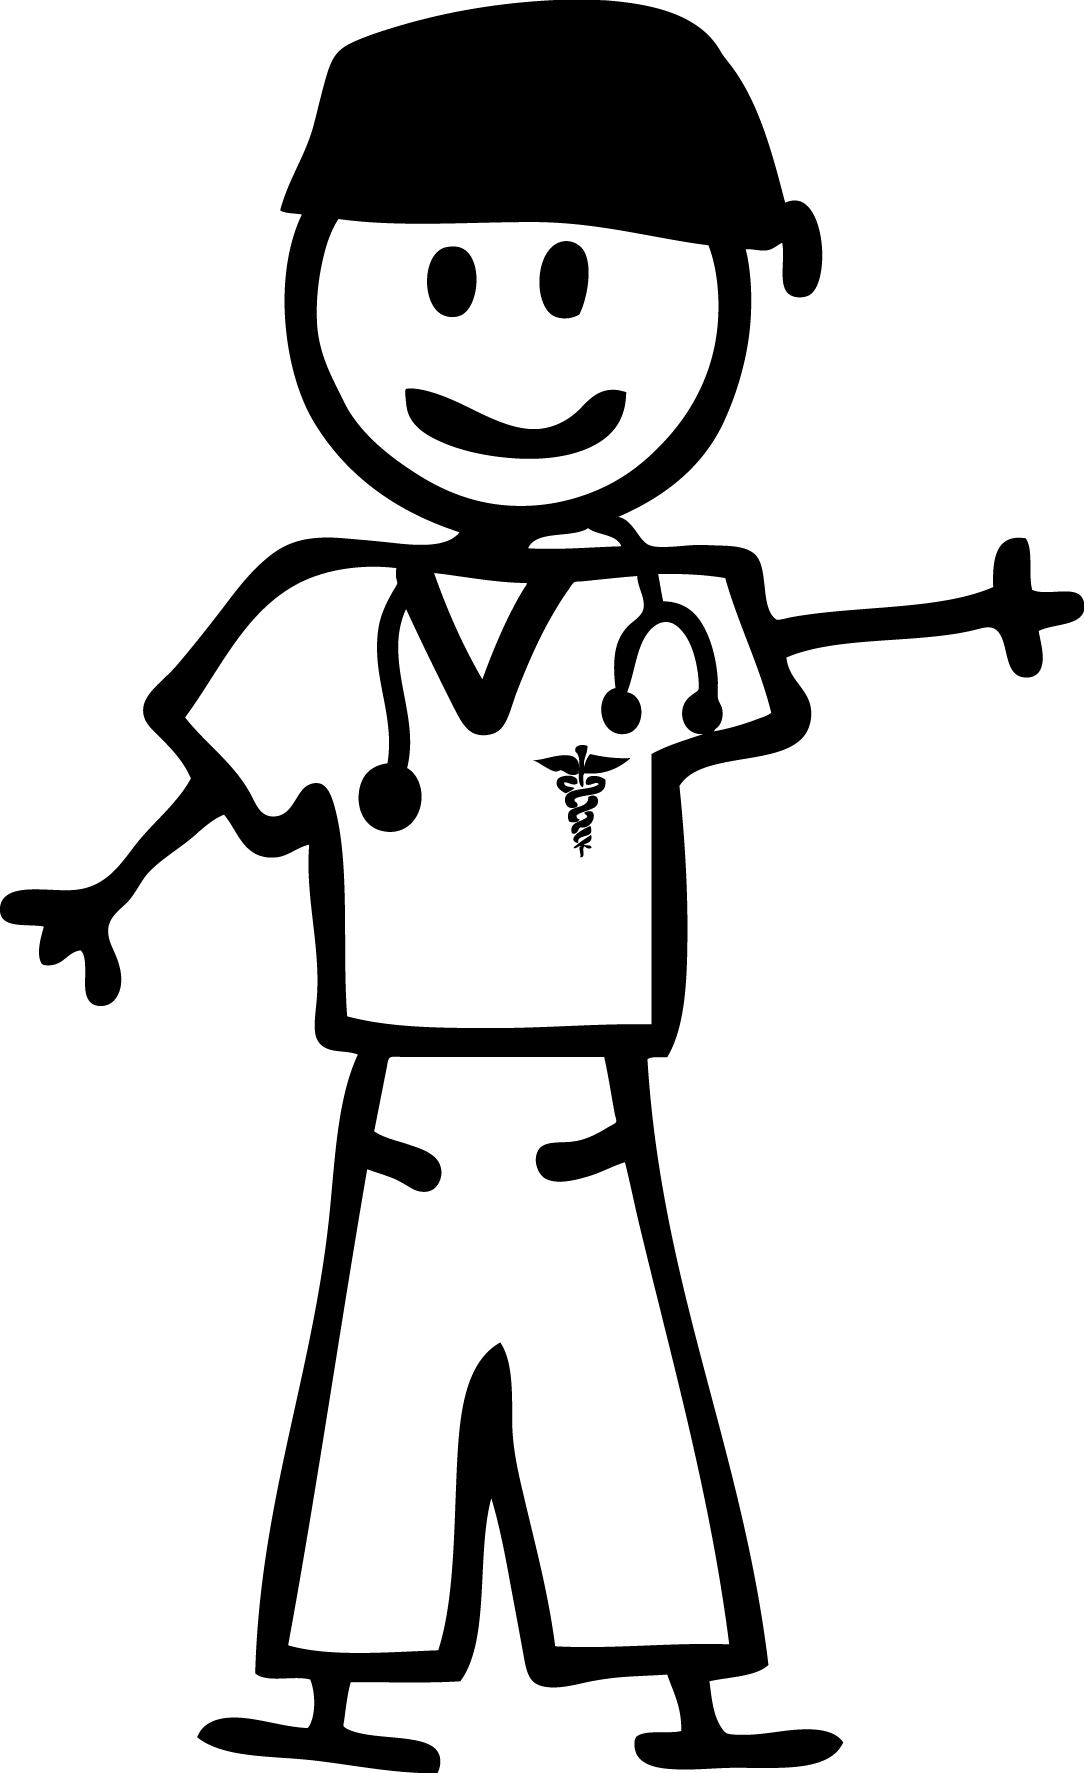 Stick figure nurse clipart